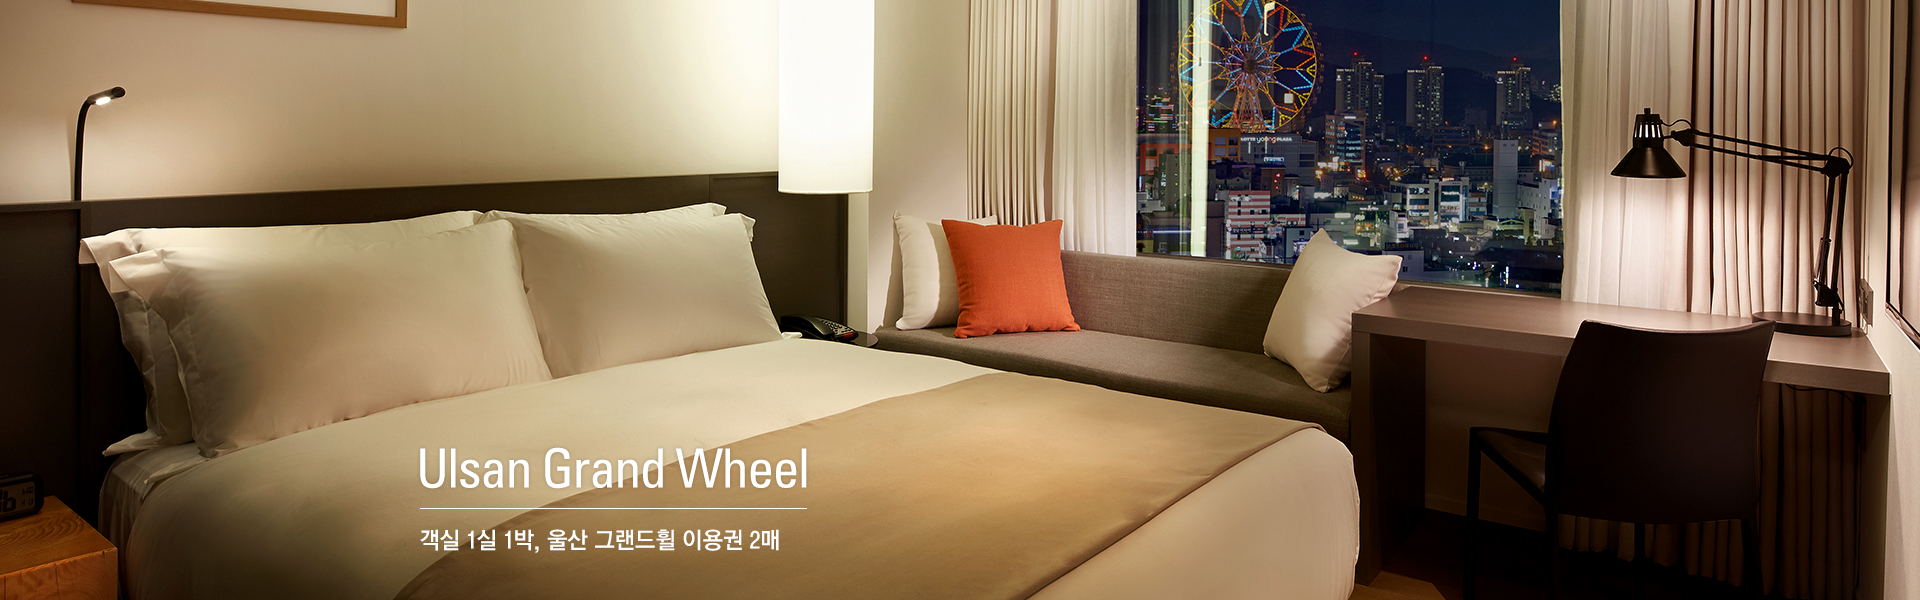 Ulsan Grand Wheel